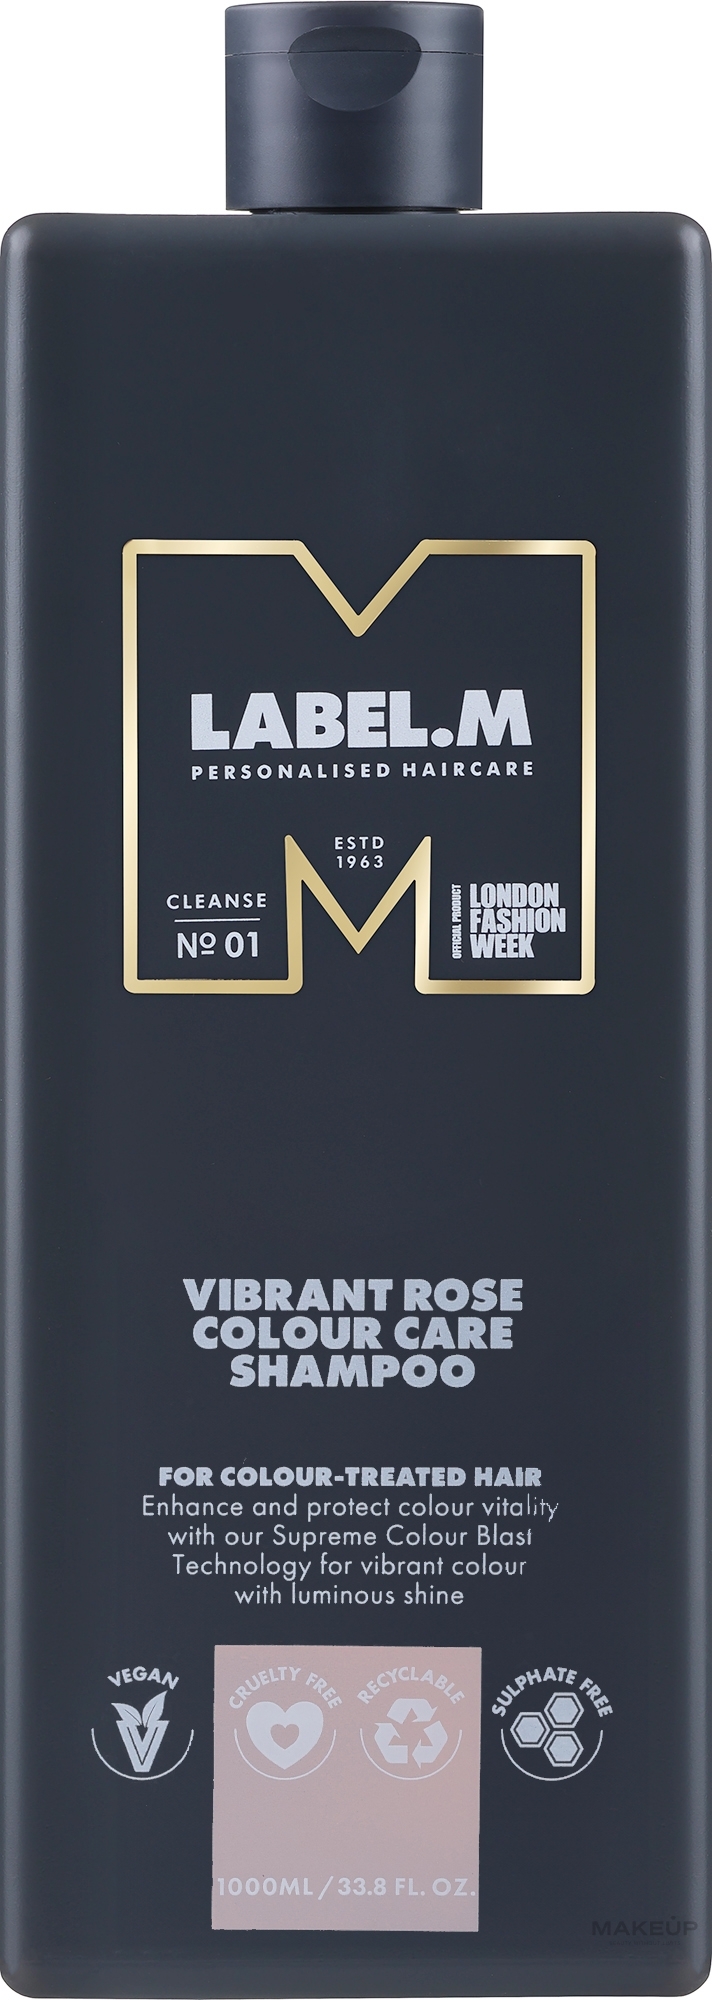 Питательный шампунь для окрашенных волос - Label.m Professional Vibrant Rose Colour Care Shampoo — фото 1000ml